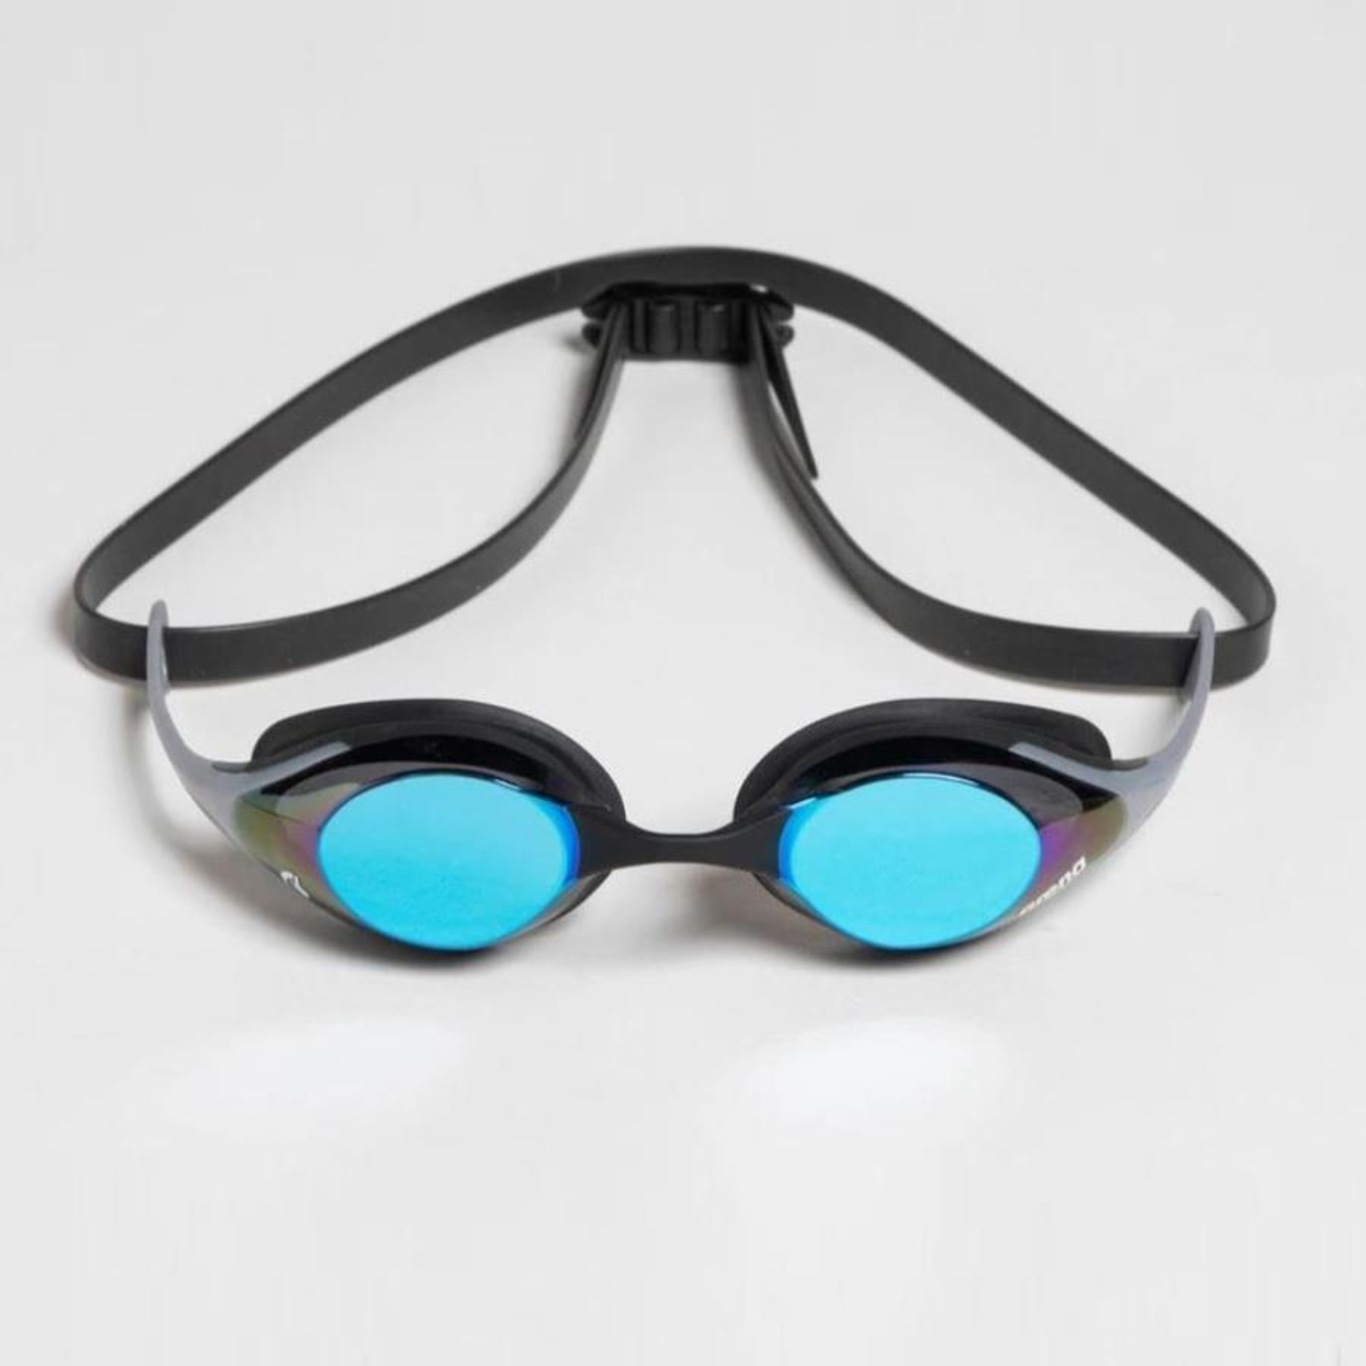 Óculos de Natação Cobra SWIPE Lente Mirror Azul Arena